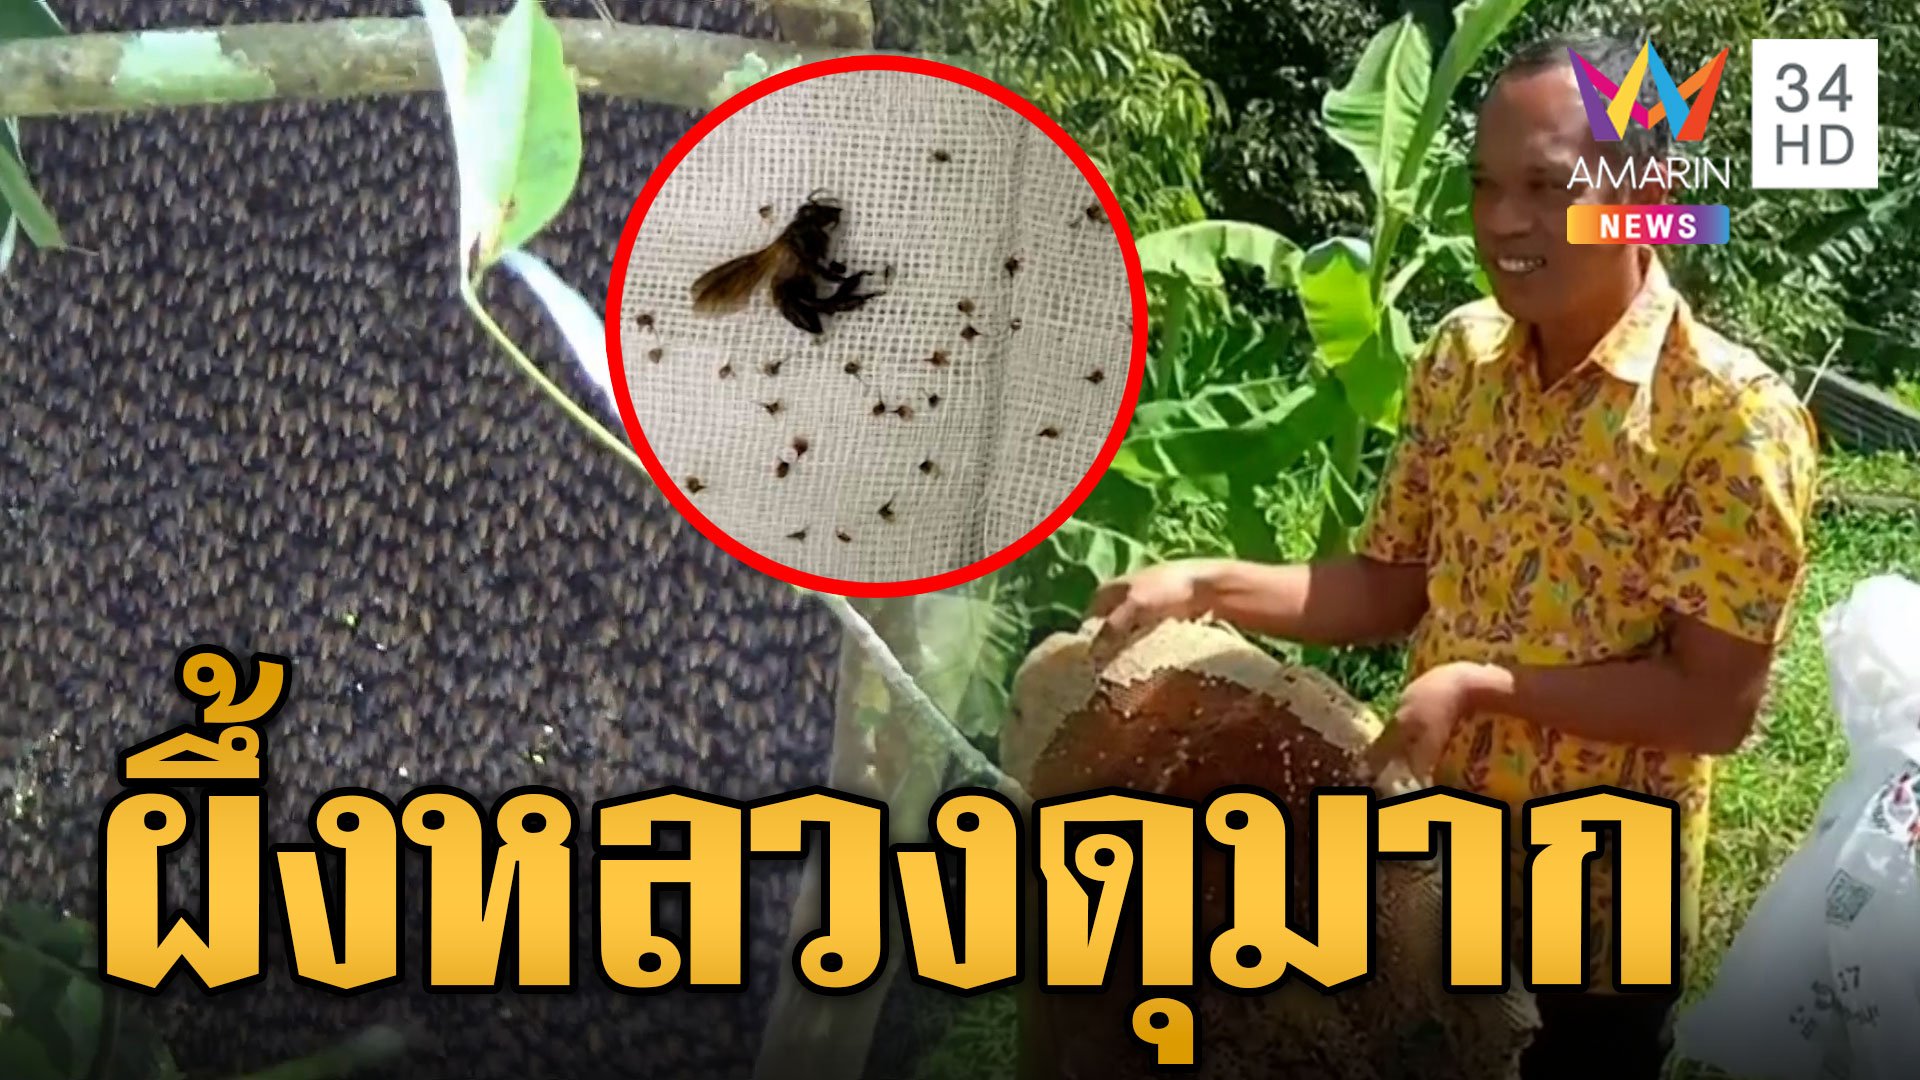 ผึ้งหลวงดุ! ชาวบ้านโดนผึ้งรุมต่อยเจ็บเพียบ 15 คน รังใหญ่เบิ้มวอนปราบ | ข่าวเที่ยงอมรินทร์ | 3 ม.ค. 67 | AMARIN TVHD34